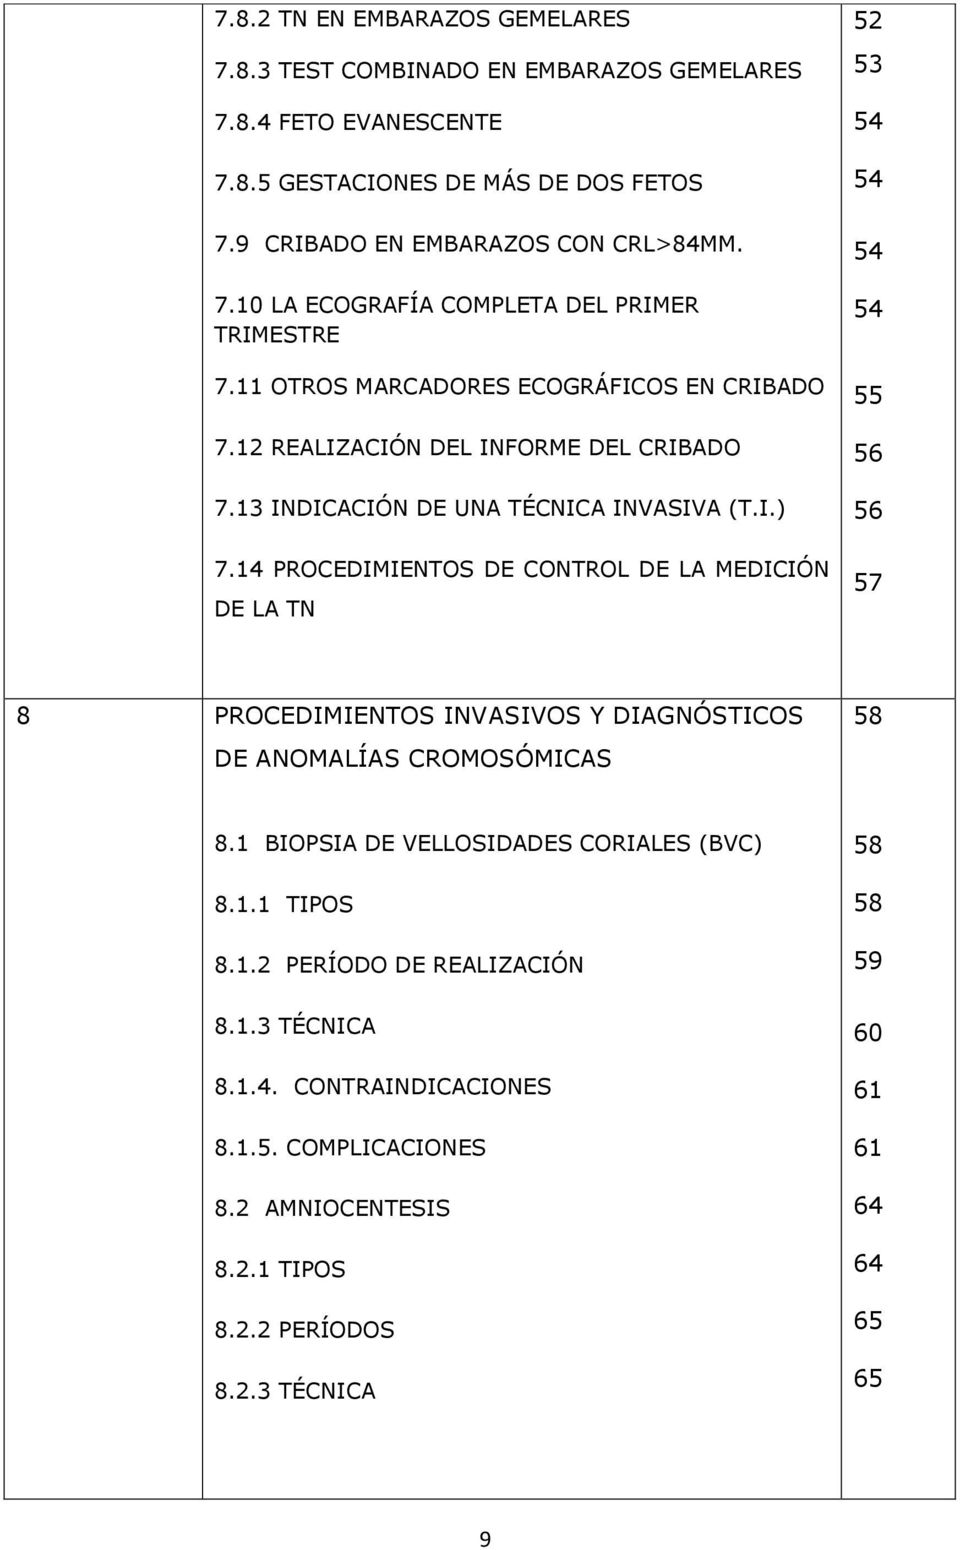 14 PROCEDIMIENTOS DE CONTROL DE LA MEDICIÓN DE LA TN 54 54 55 56 56 57 8 PROCEDIMIENTOS INVASIVOS Y DIAGNÓSTICOS DE ANOMALÍAS CROMOSÓMICAS 58 8.1 BIOPSIA DE VELLOSIDADES CORIALES (BVC) 8.